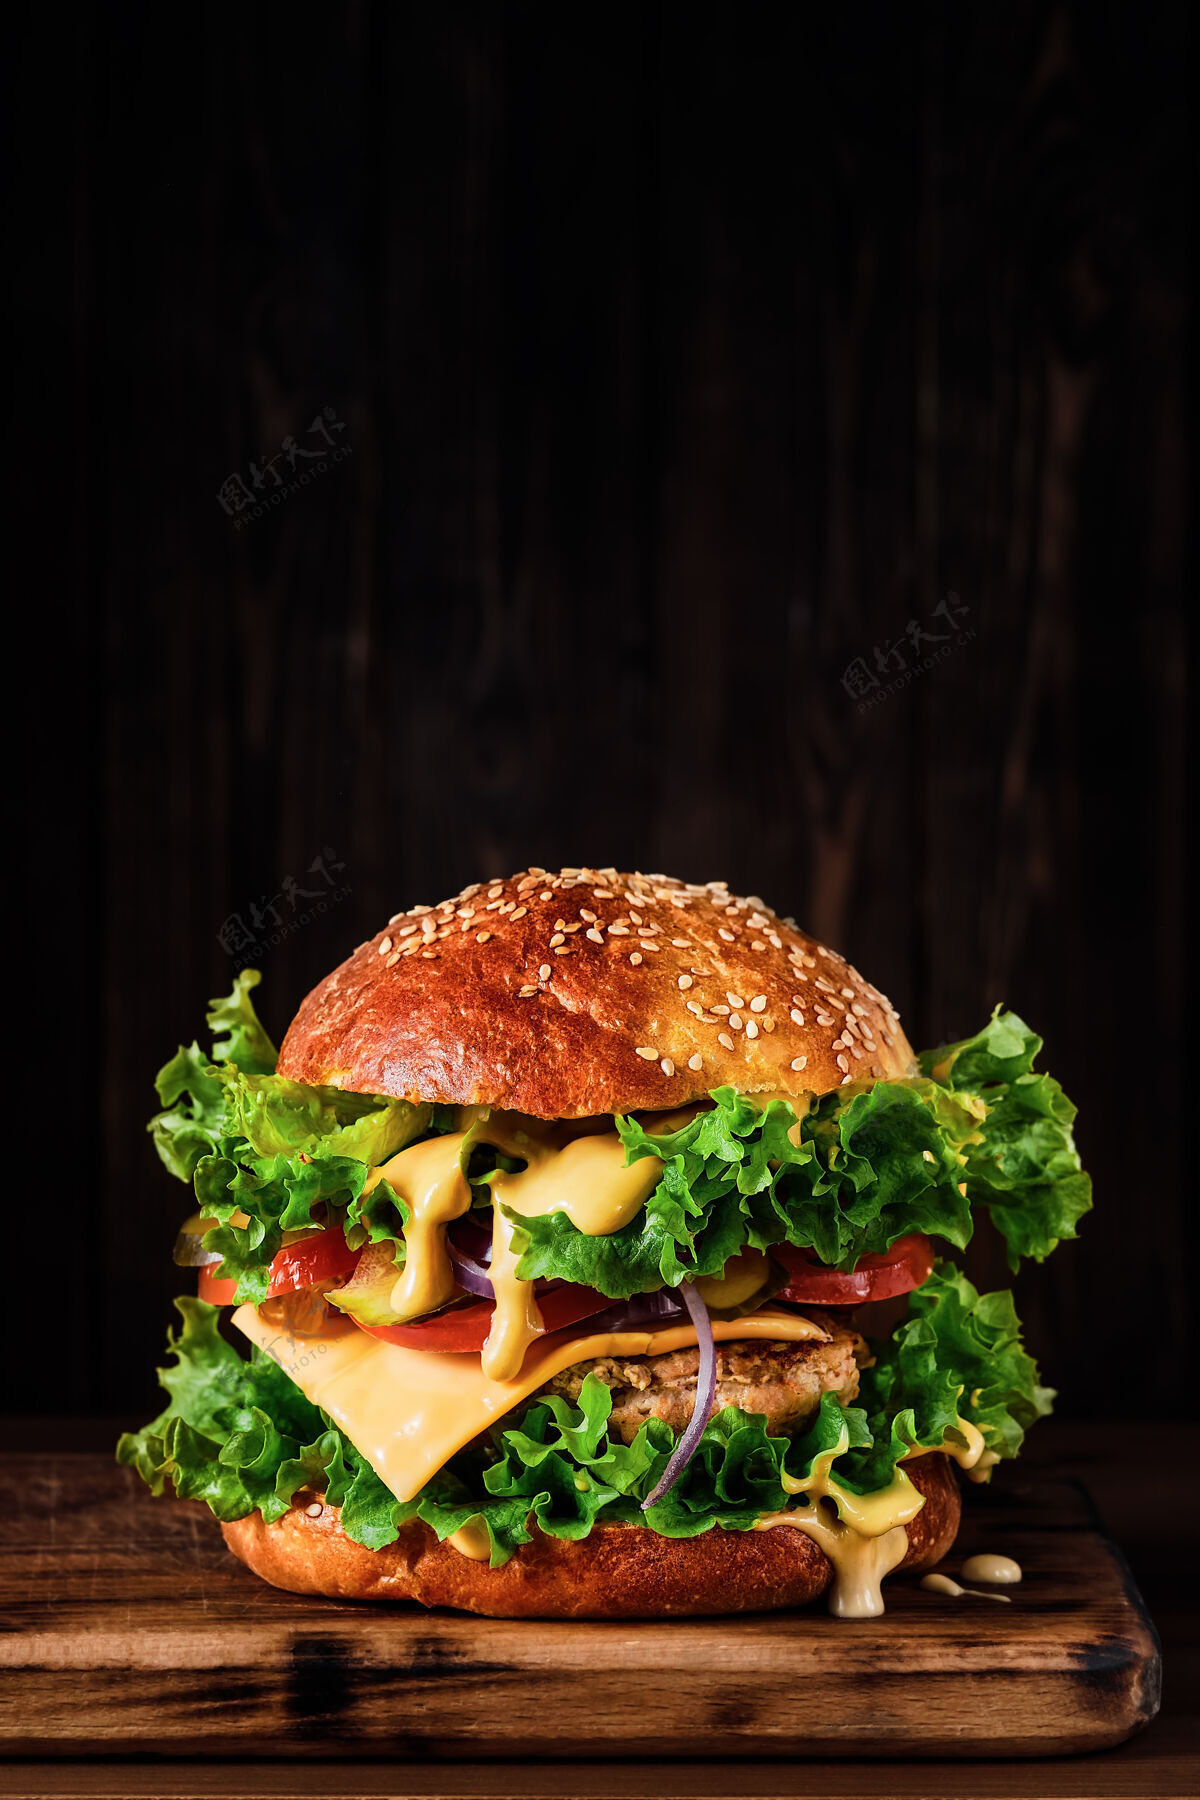 芝麻新鲜美味的烤制自制汉堡包 配火鸡肉片 奶酪 奶酪沙司和蔬菜 放在木板上 放在深色的烤盘上墙关闭向上 用复制空间选择焦点午餐肉西红柿